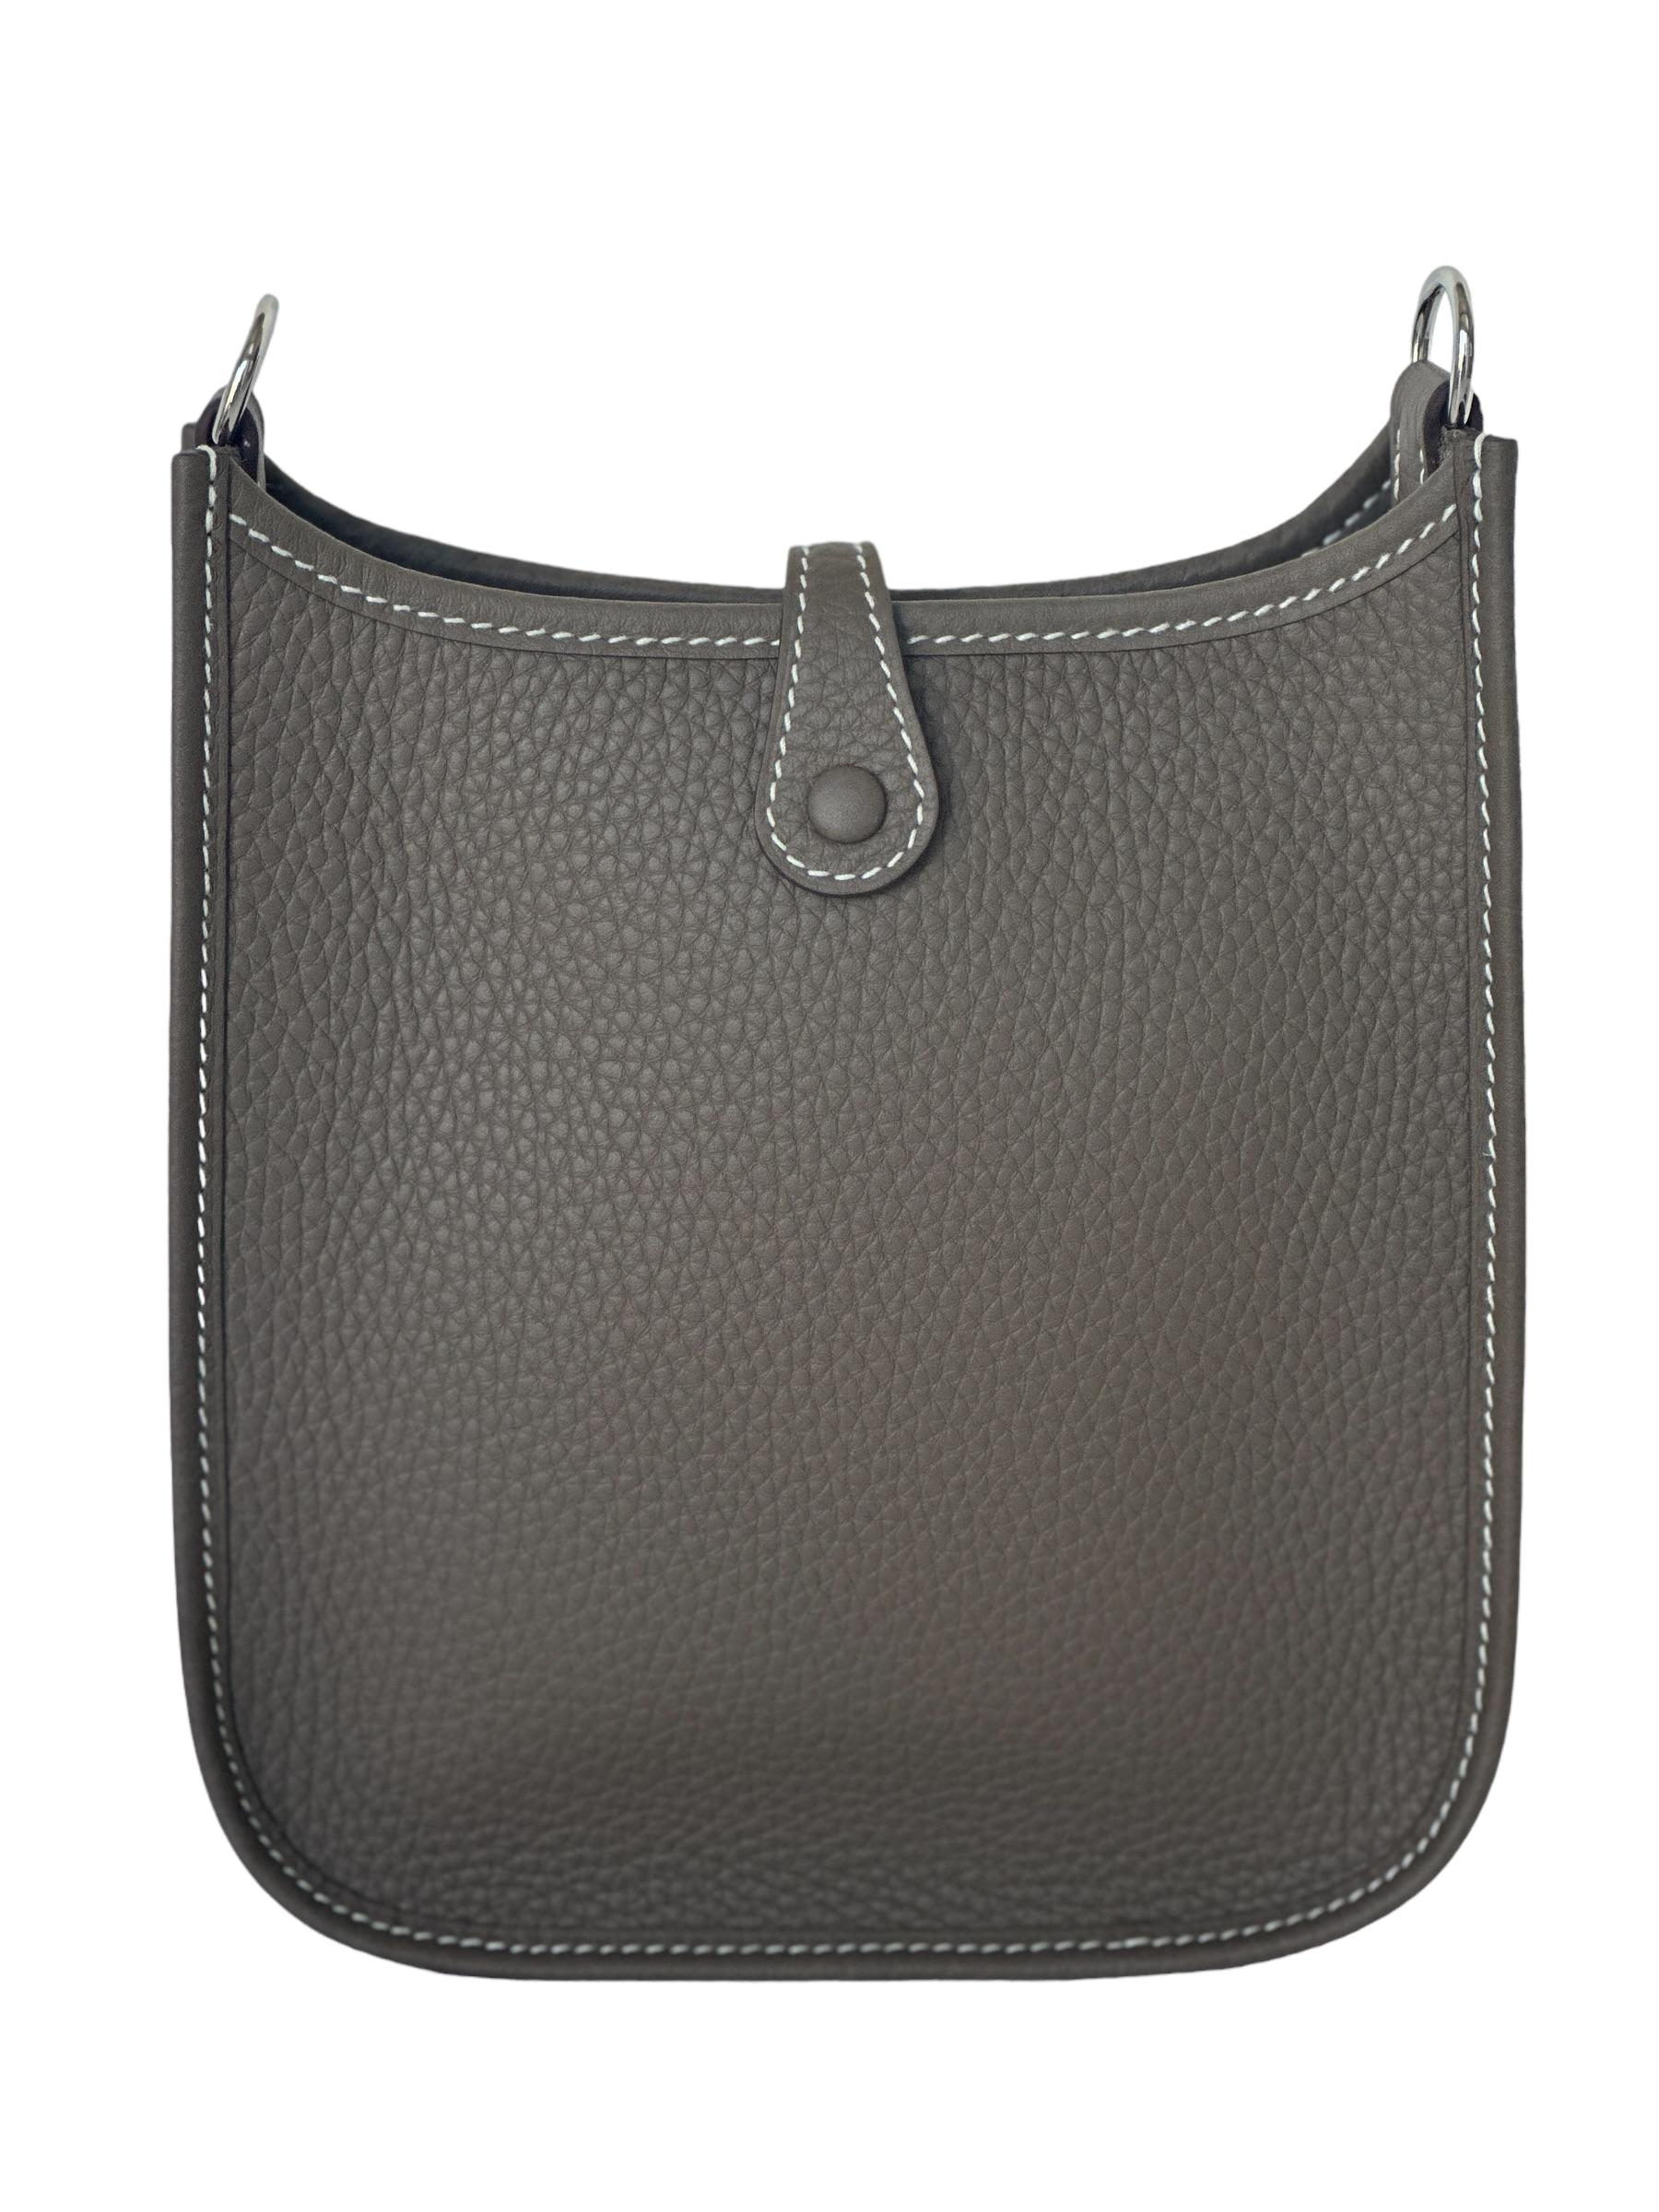 Hermès Evelyne 16 TPM Etoupe Bag Palladium Hardware  3